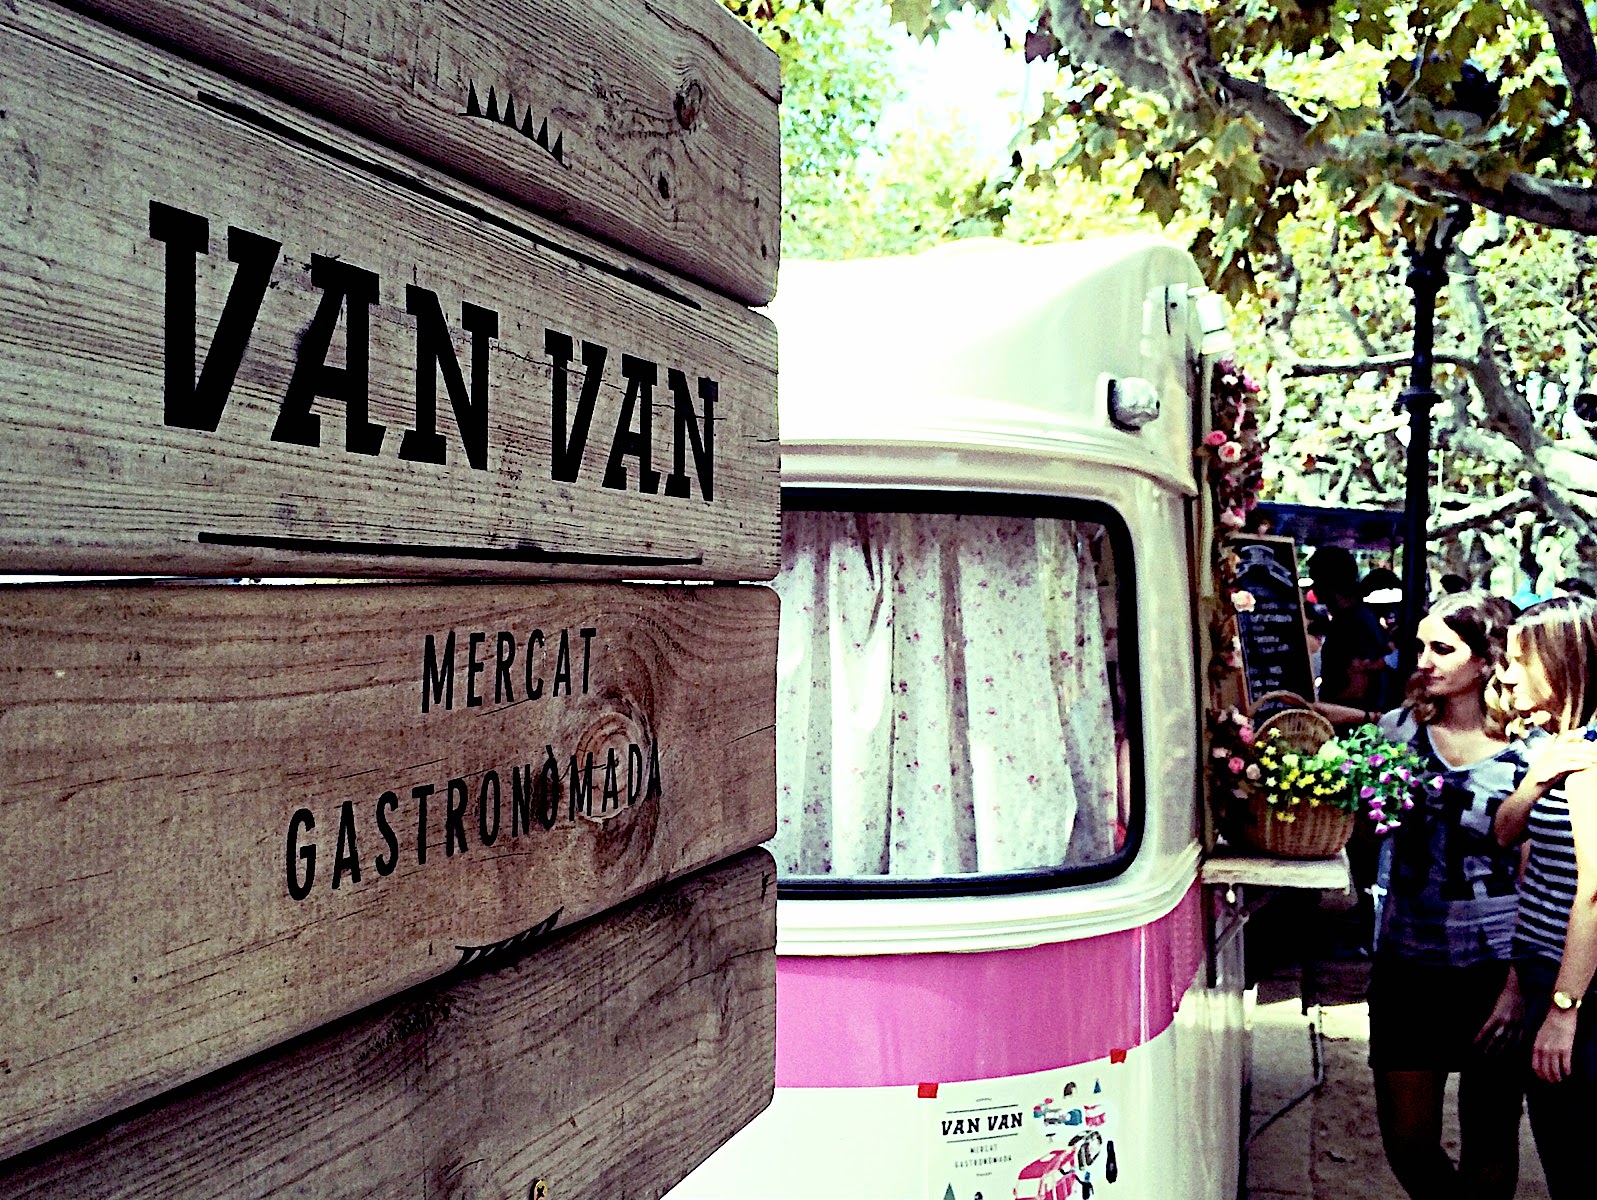 La Street Food más cool: Van Van. Mercat Gastronòmada